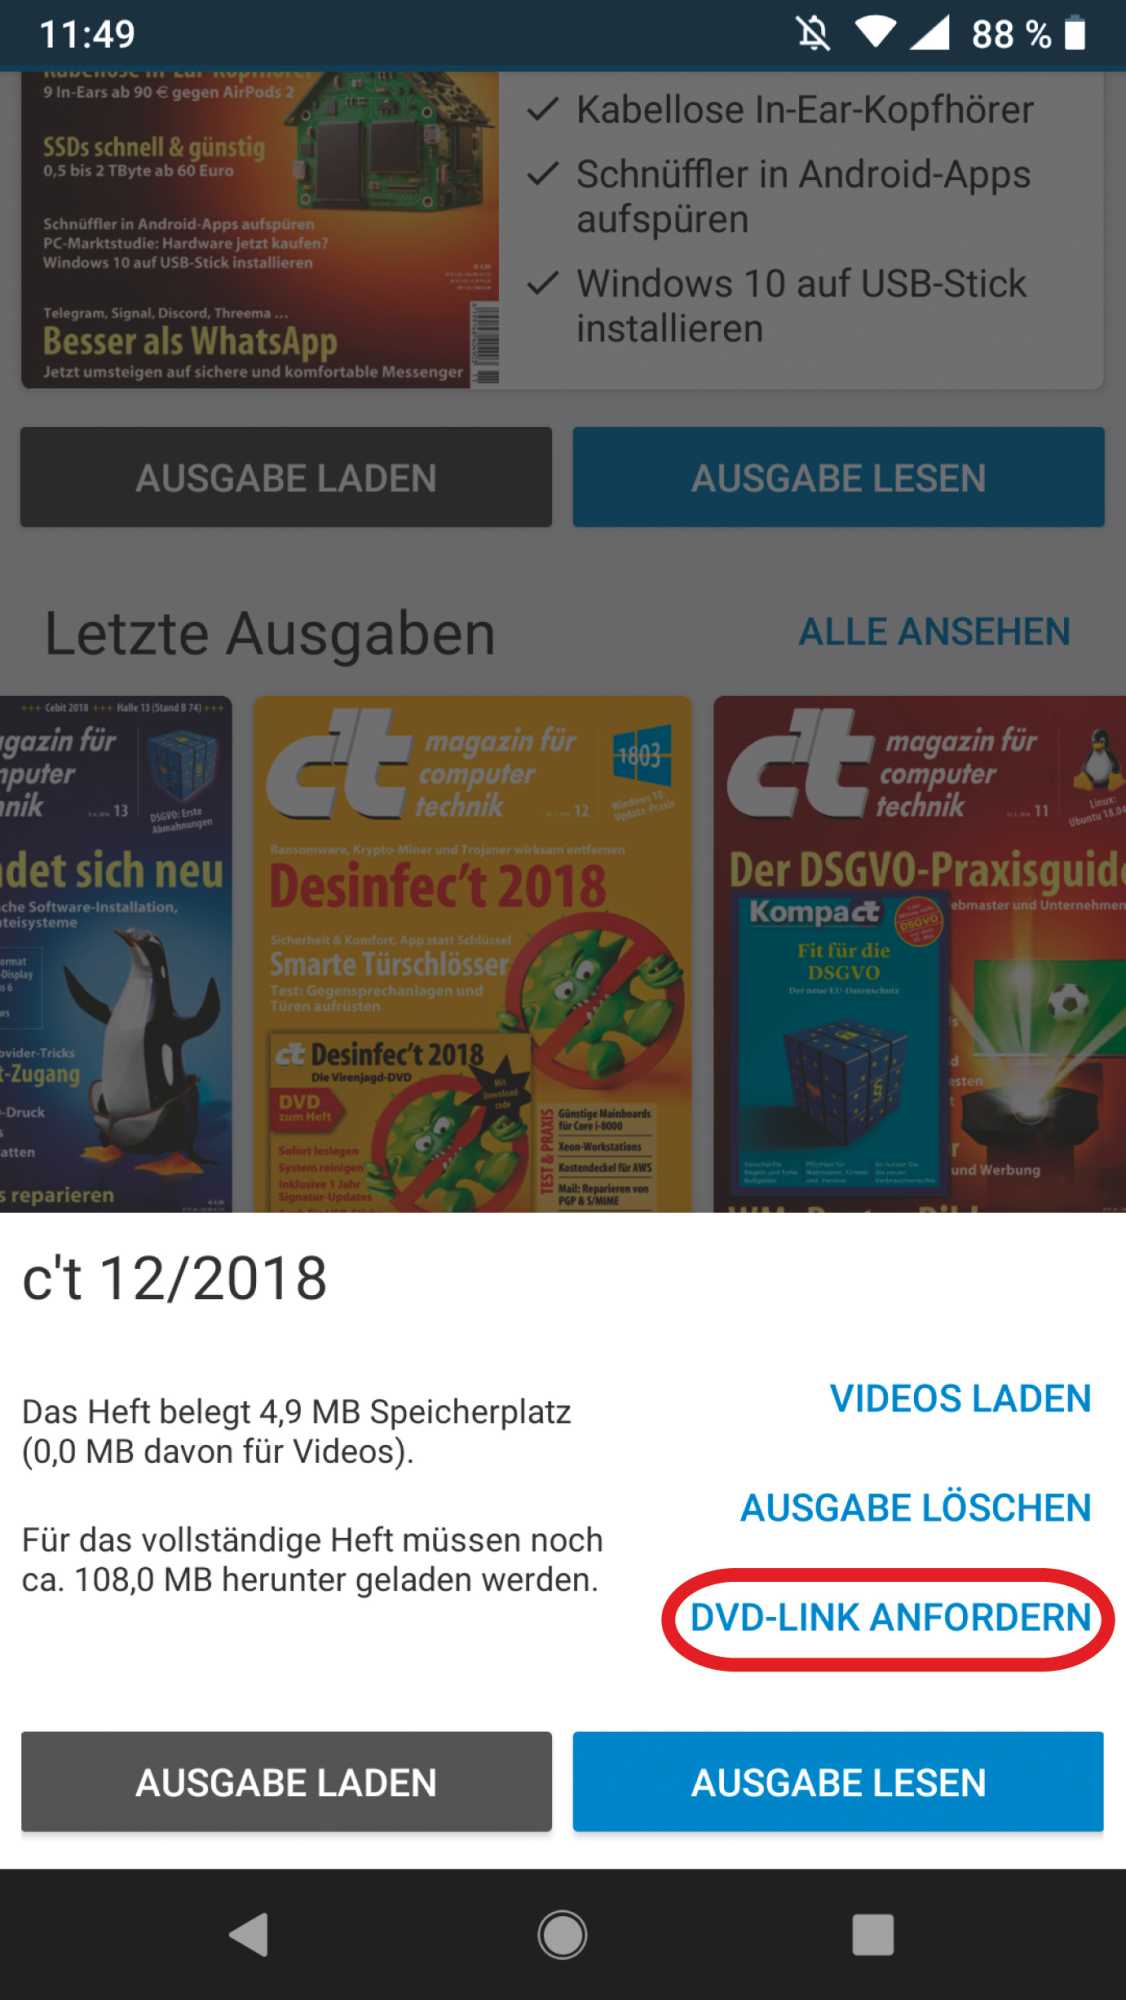 Um Desinfec’t herunterzuladen, muss man in der c’t-App für Android lediglich die Ausgabe 12/2019 auswählen und dort auf „DVD-Link anfordern“ klicken.